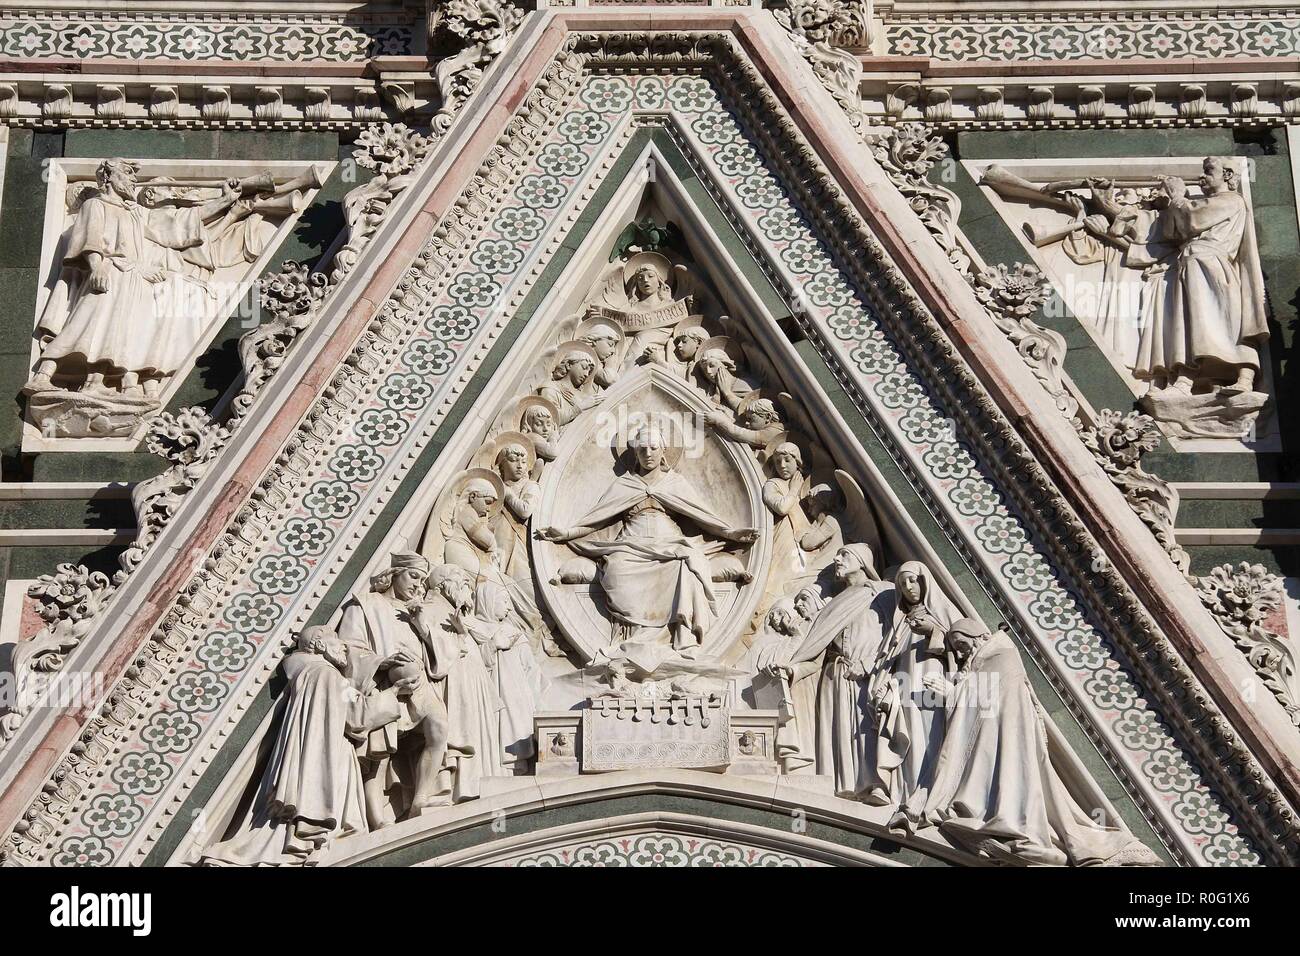 Ilustración de la fachada de la Catedral de Florencia en Italia Foto de stock